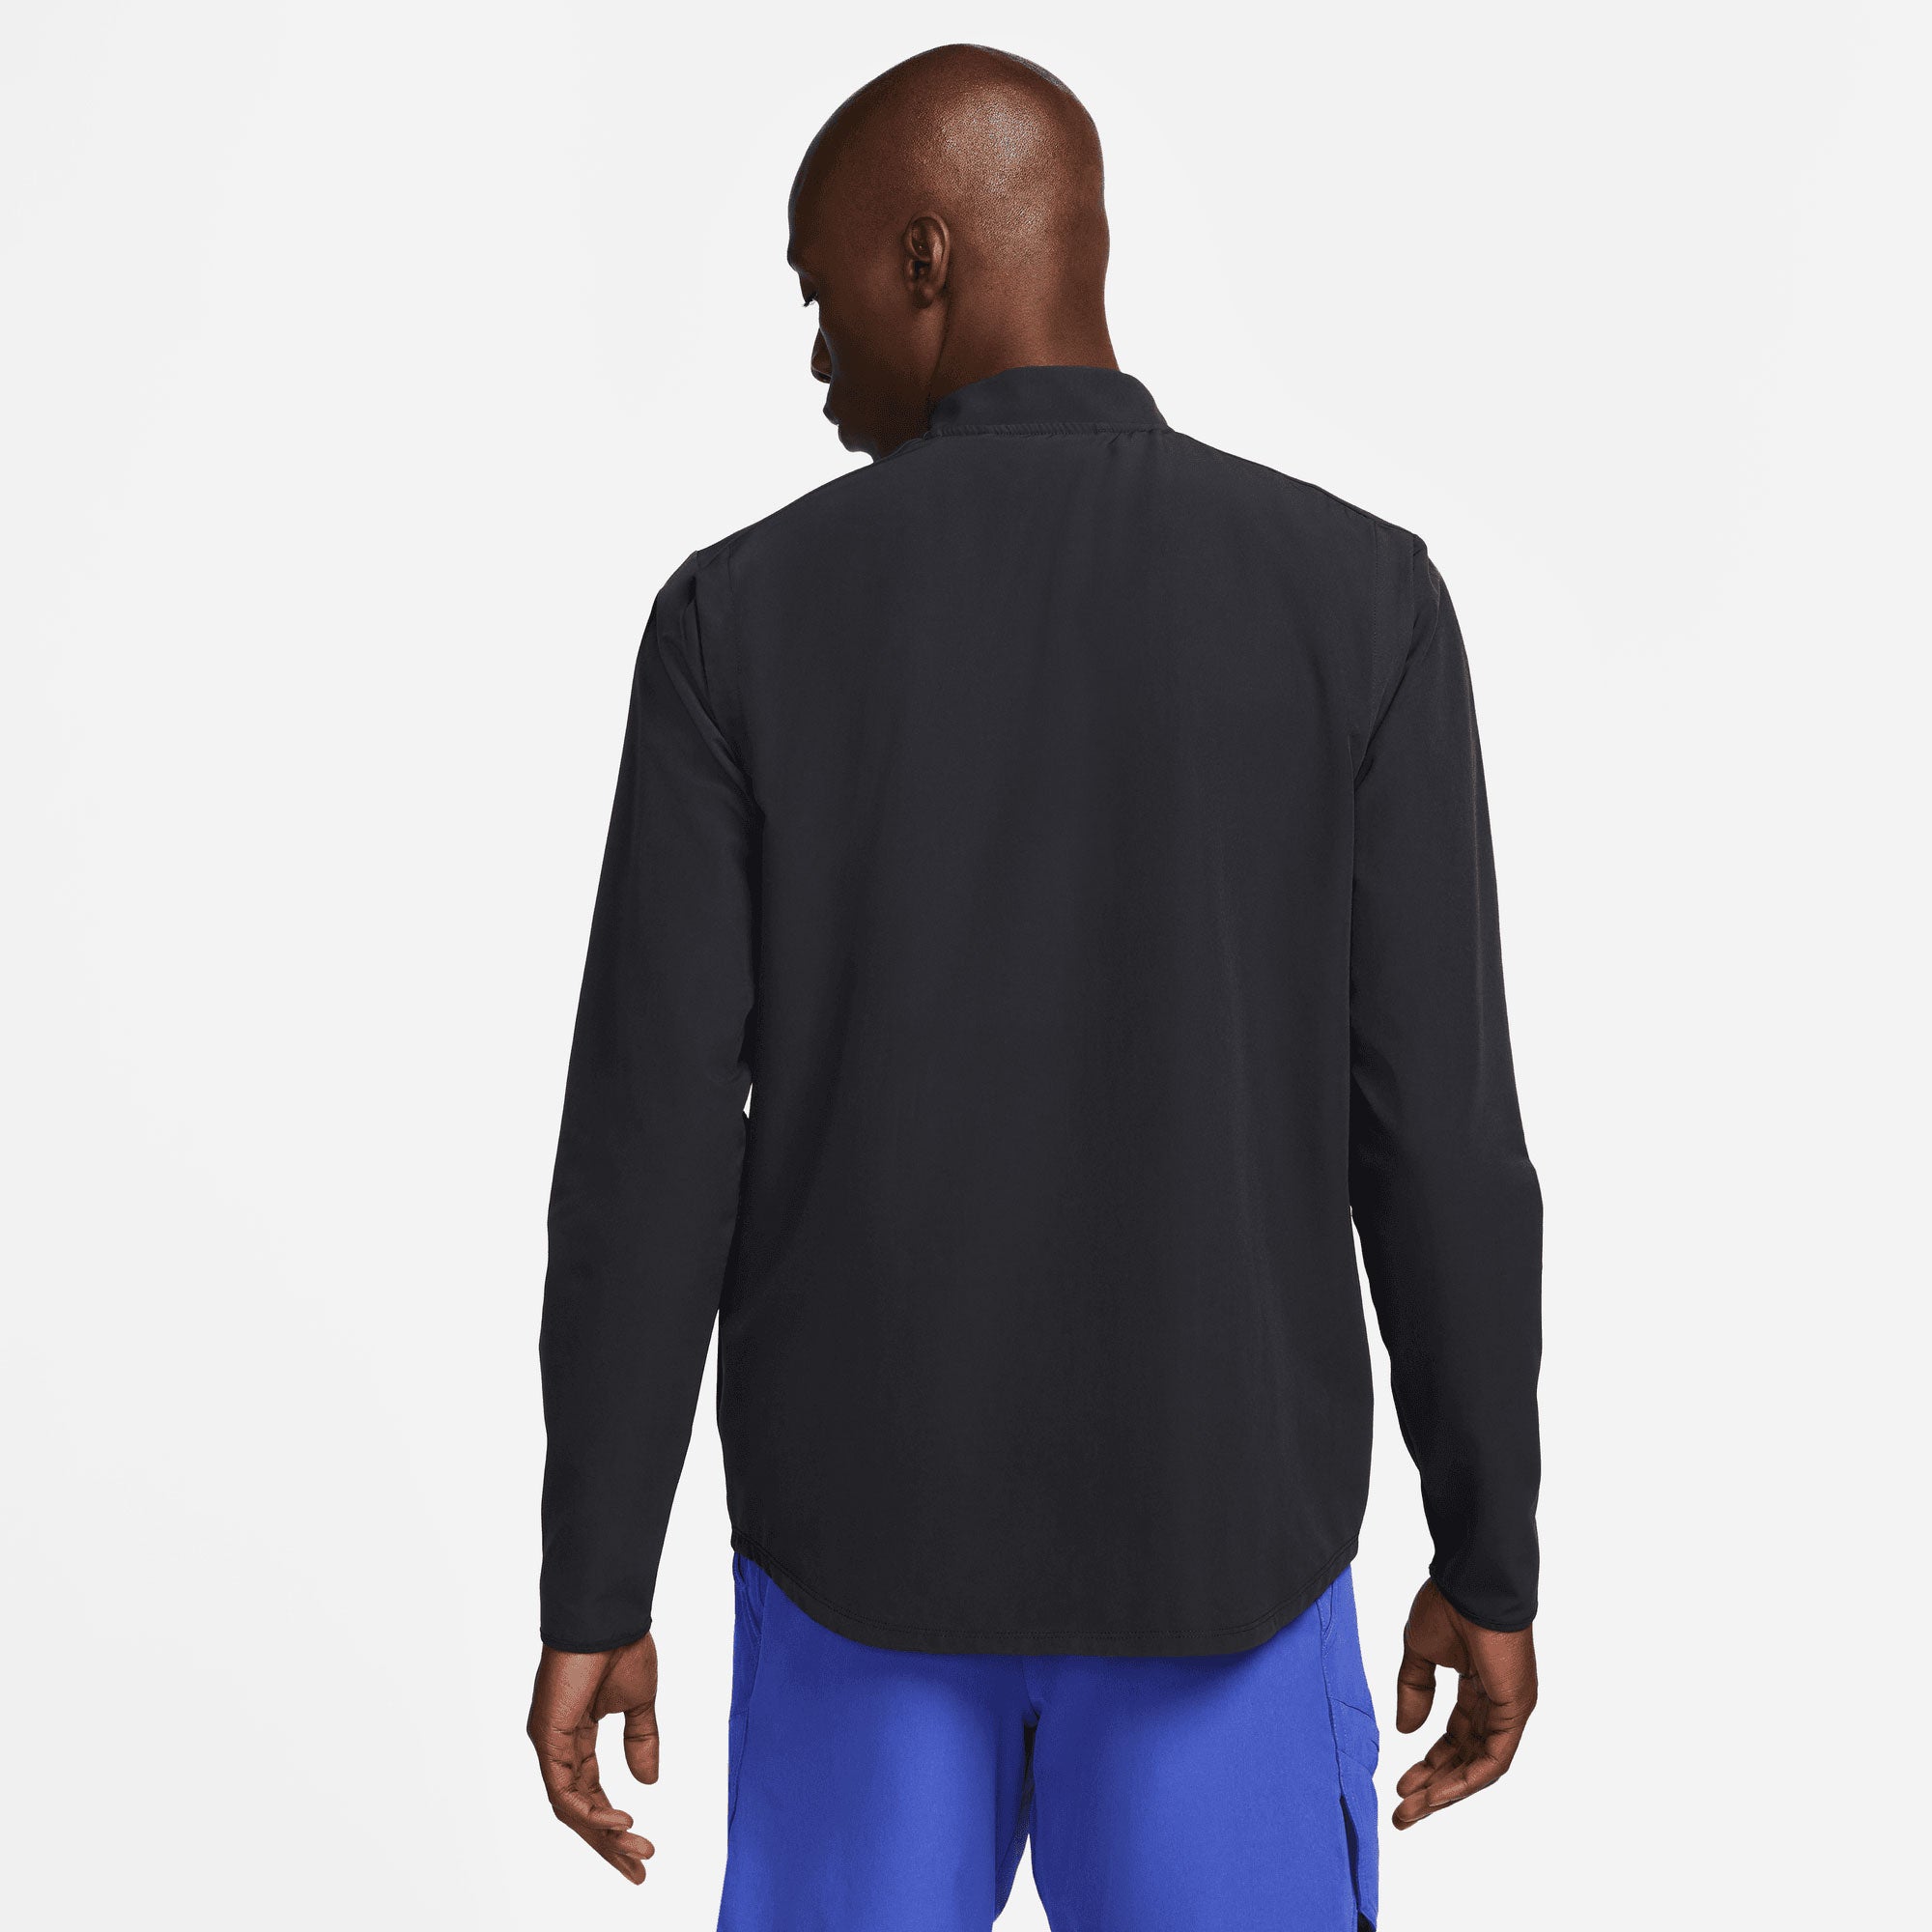 NikeCourt Advantage Men's Packable Tennis Jacket Black (2)